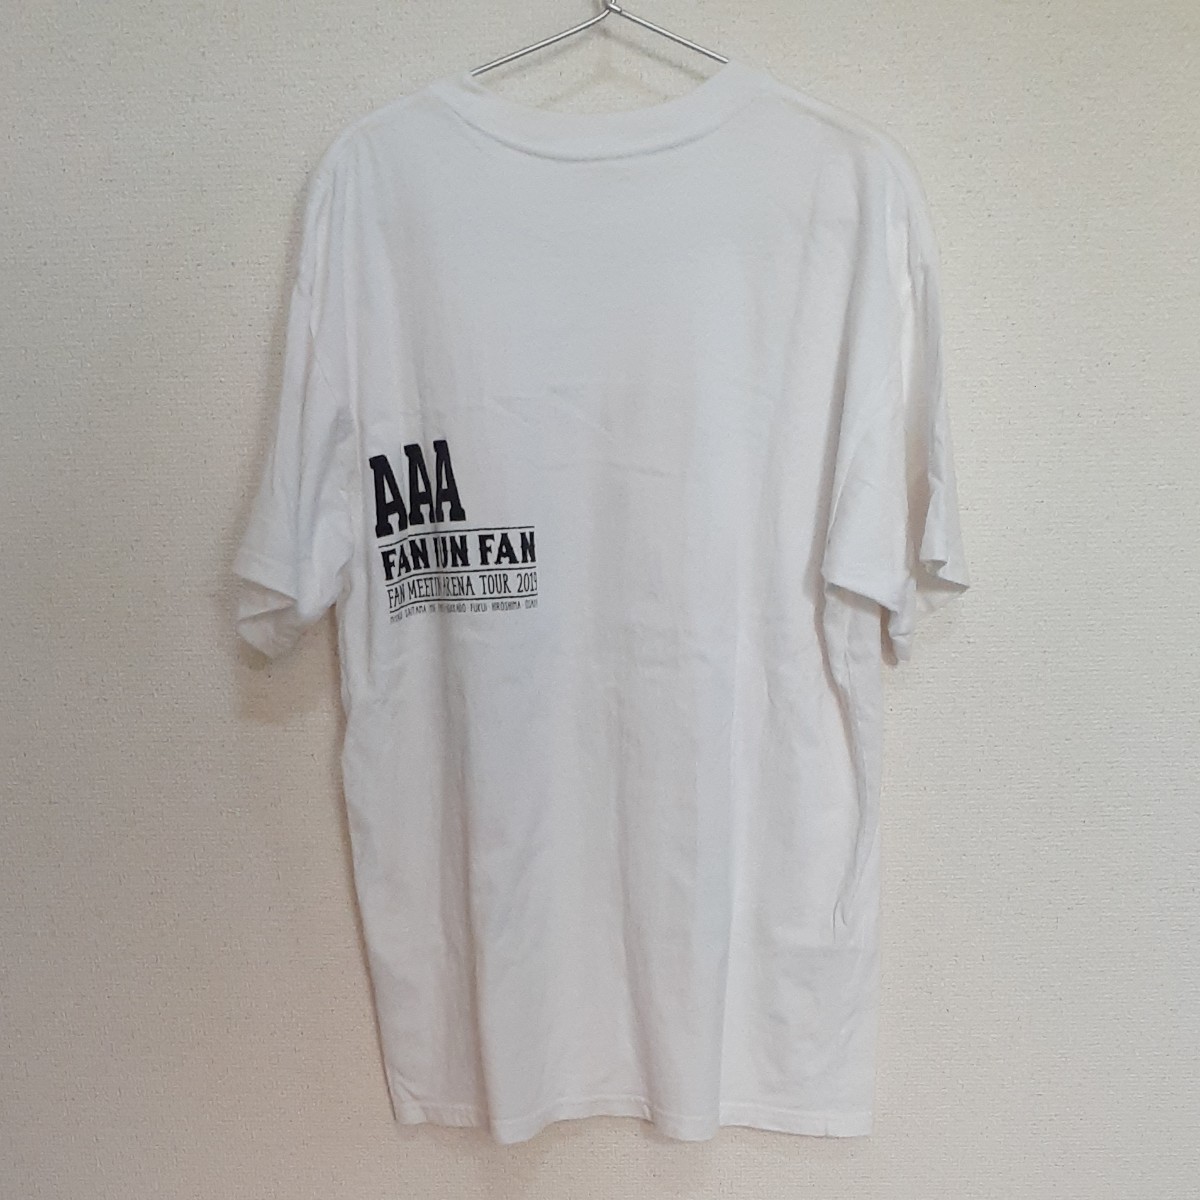 AAA　ファンミーティング2019 FANFUNFAN ライブTシャツ  L